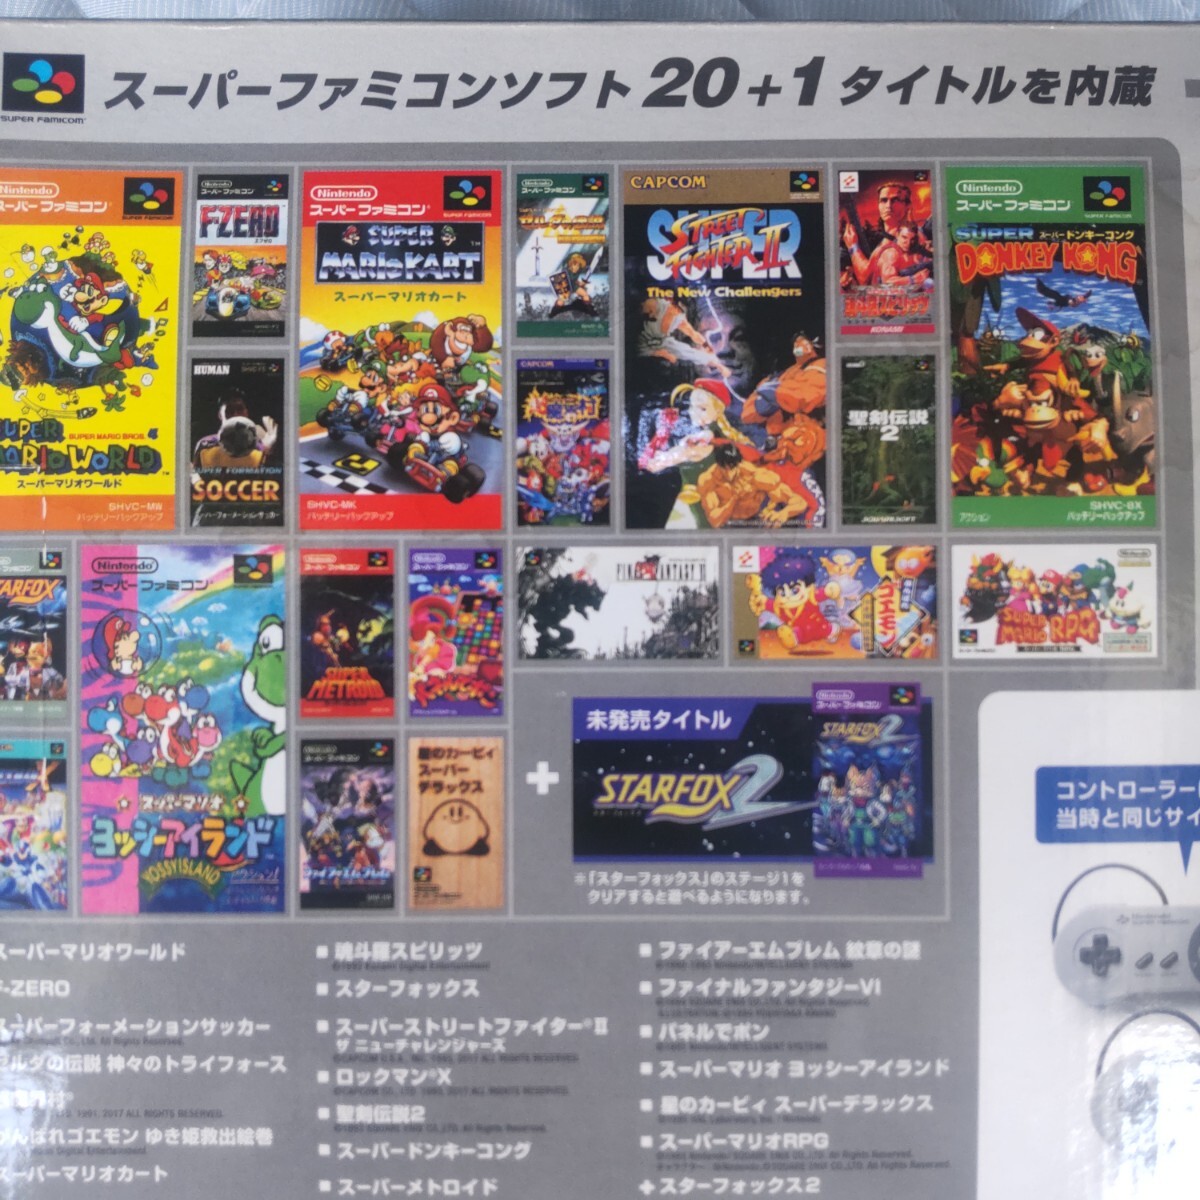 [ нераспечатанный не использовался товар ]Nintendo Nintendo Classic Mini Super Famicom SUPER FAMICOM Super Famicom soft 20+1 название . встроенный 